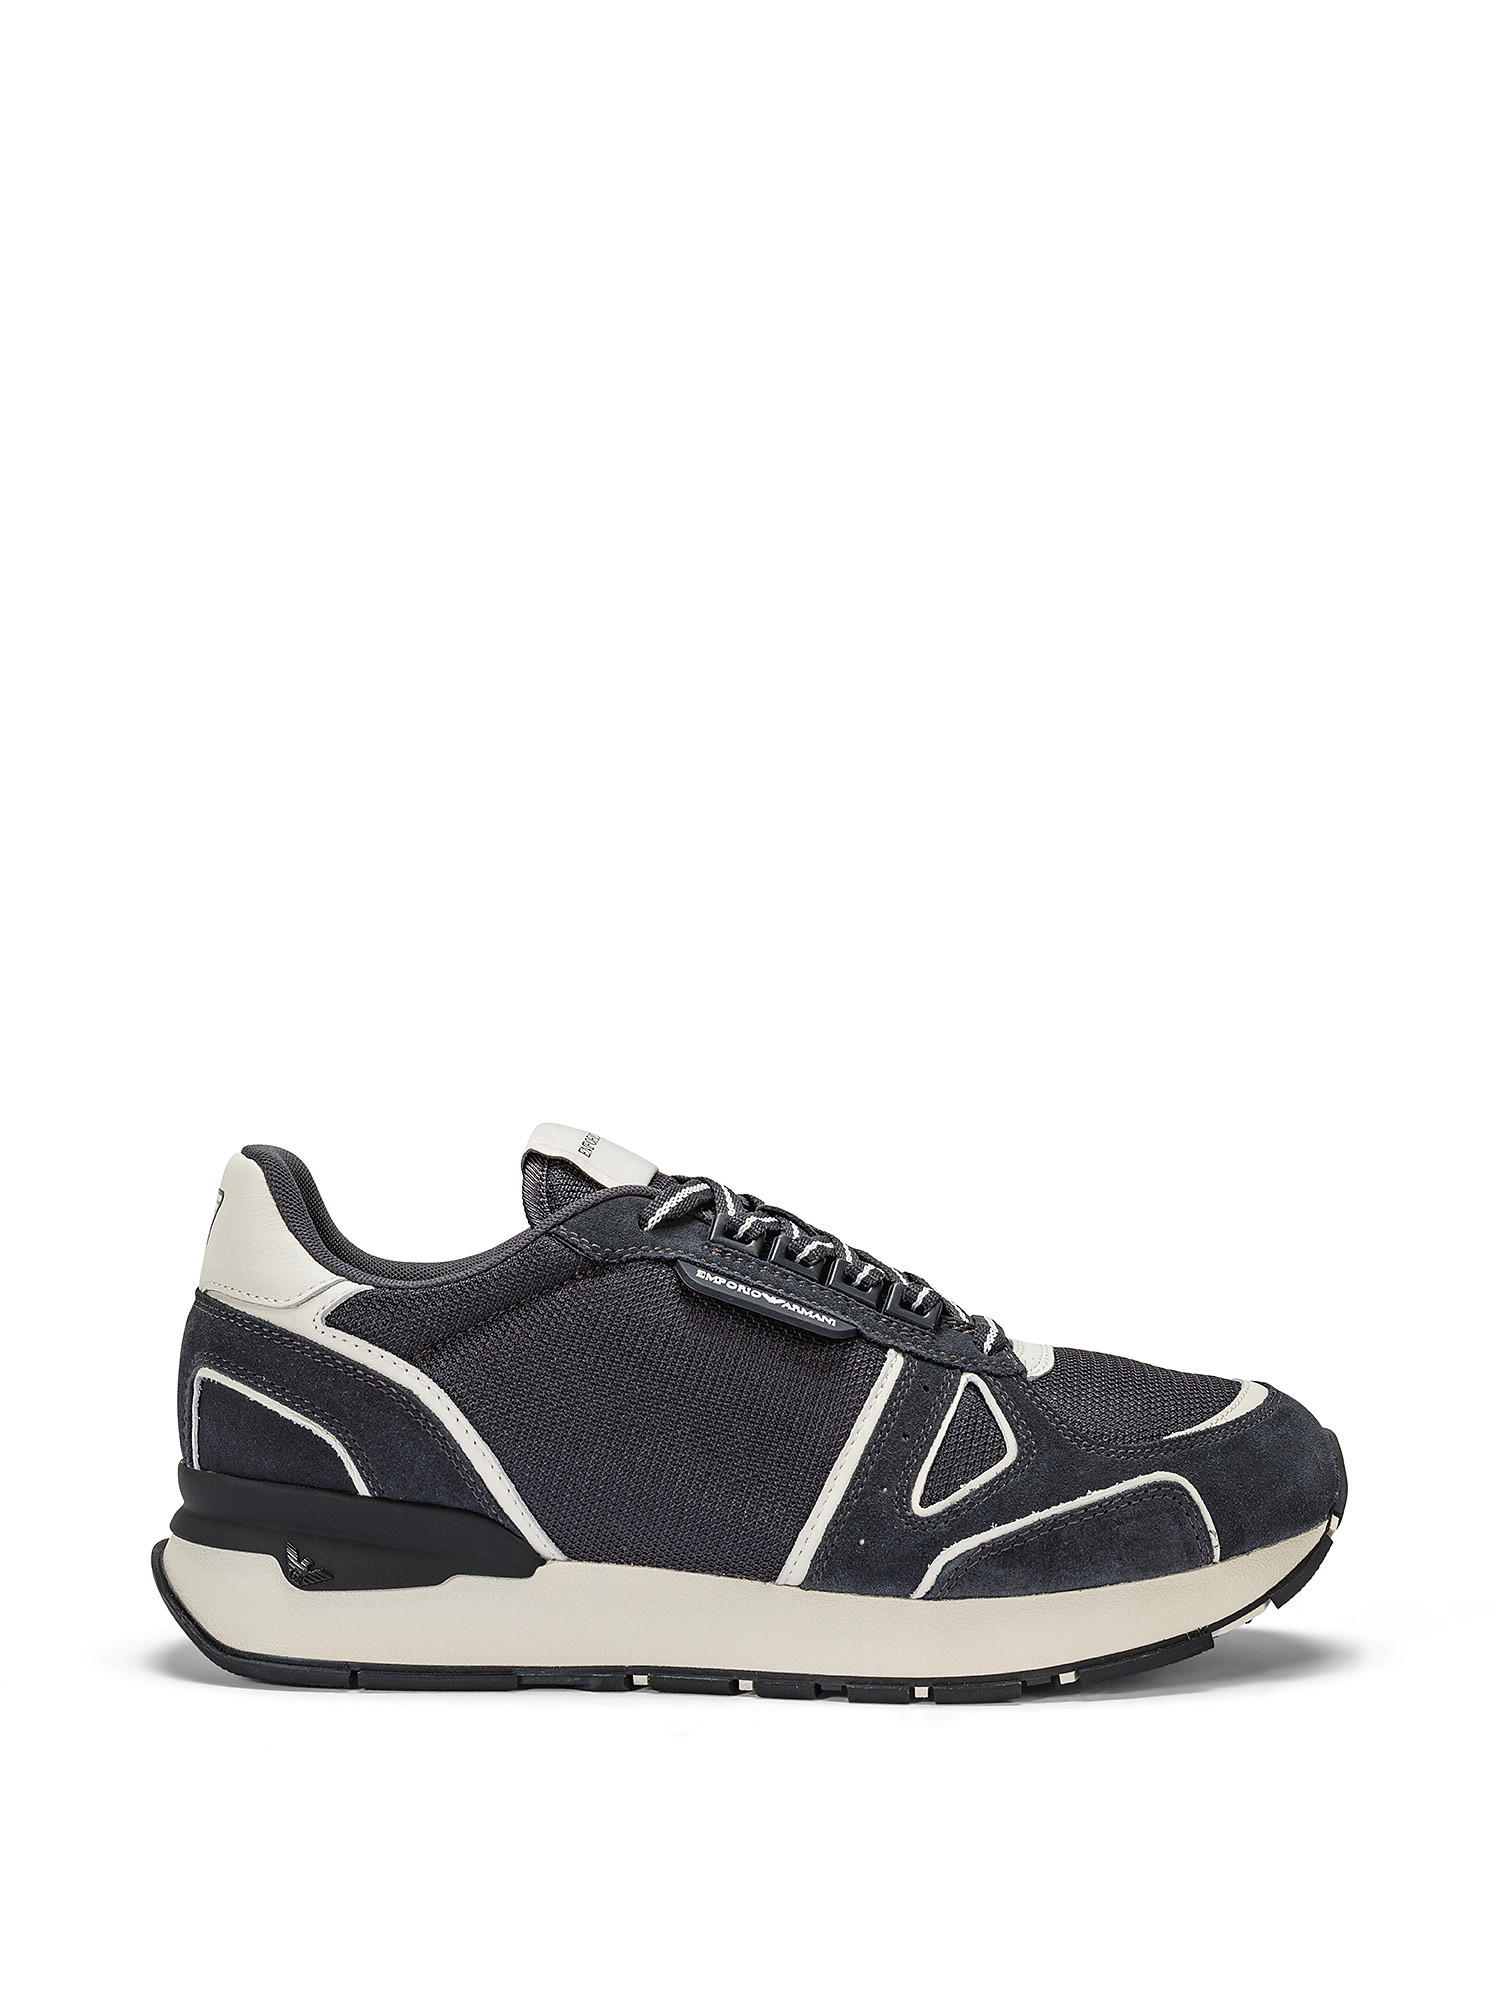 Emporio Armani - Sneakers con inserti scamosciati, Blu scuro, large image number 0